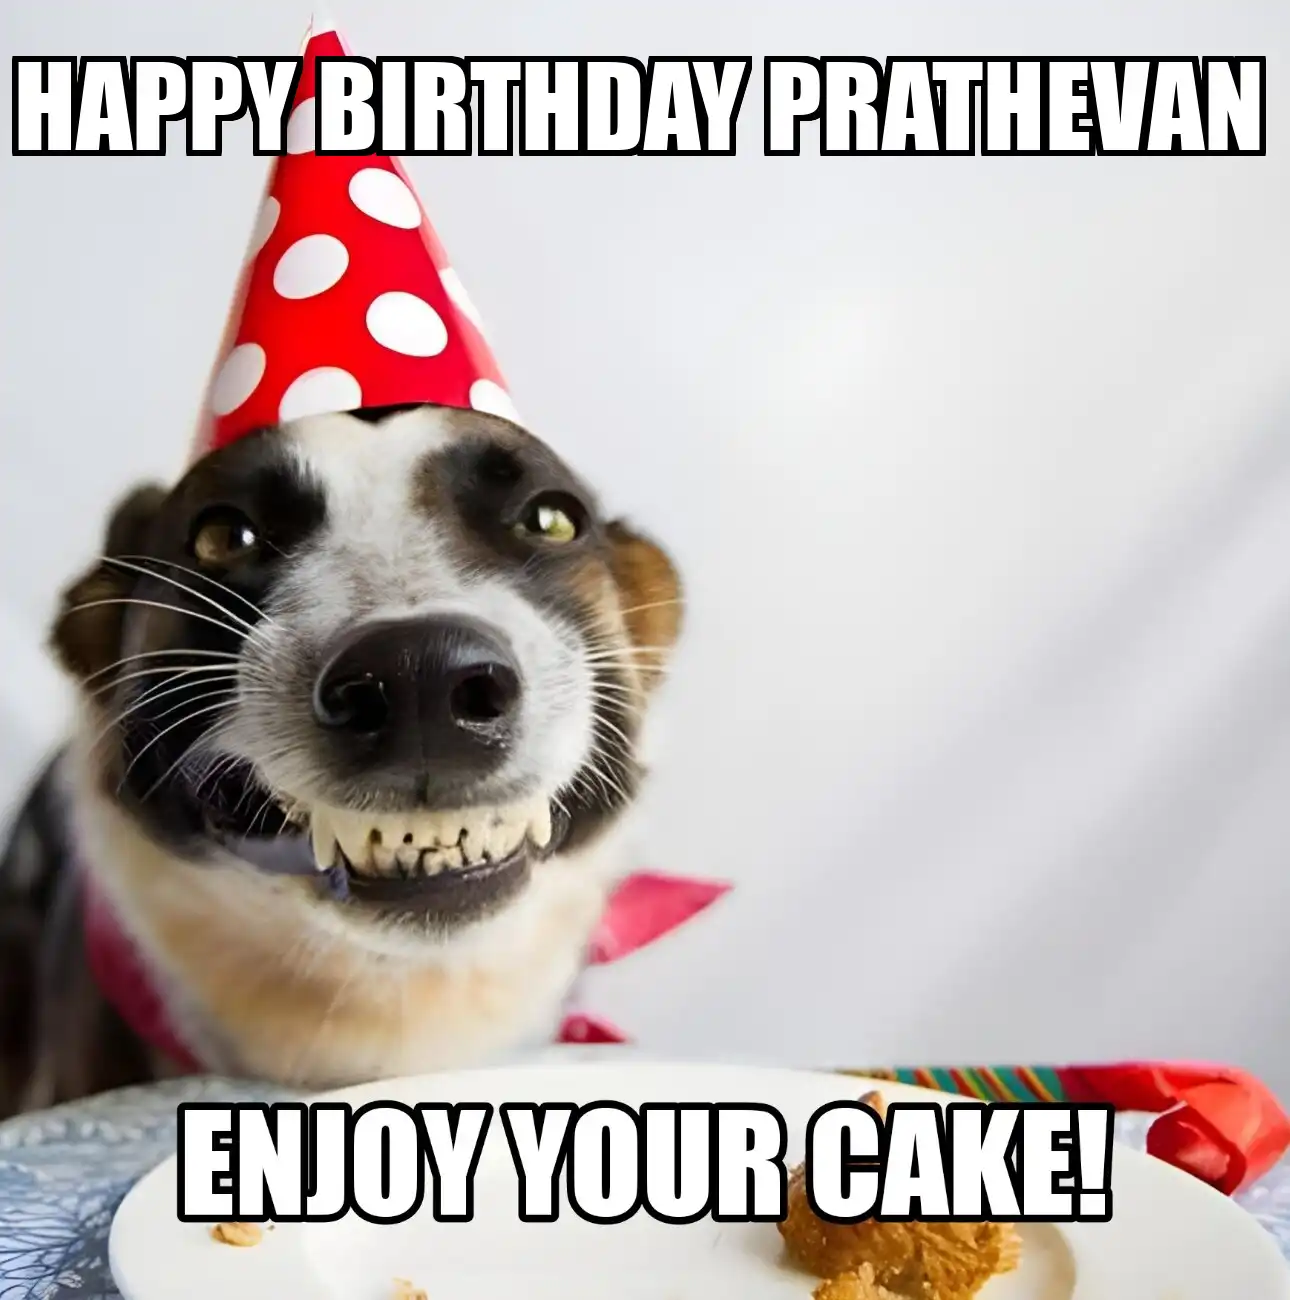 Happy Birthday Prathevan Enjoy Your Cake Dog Meme